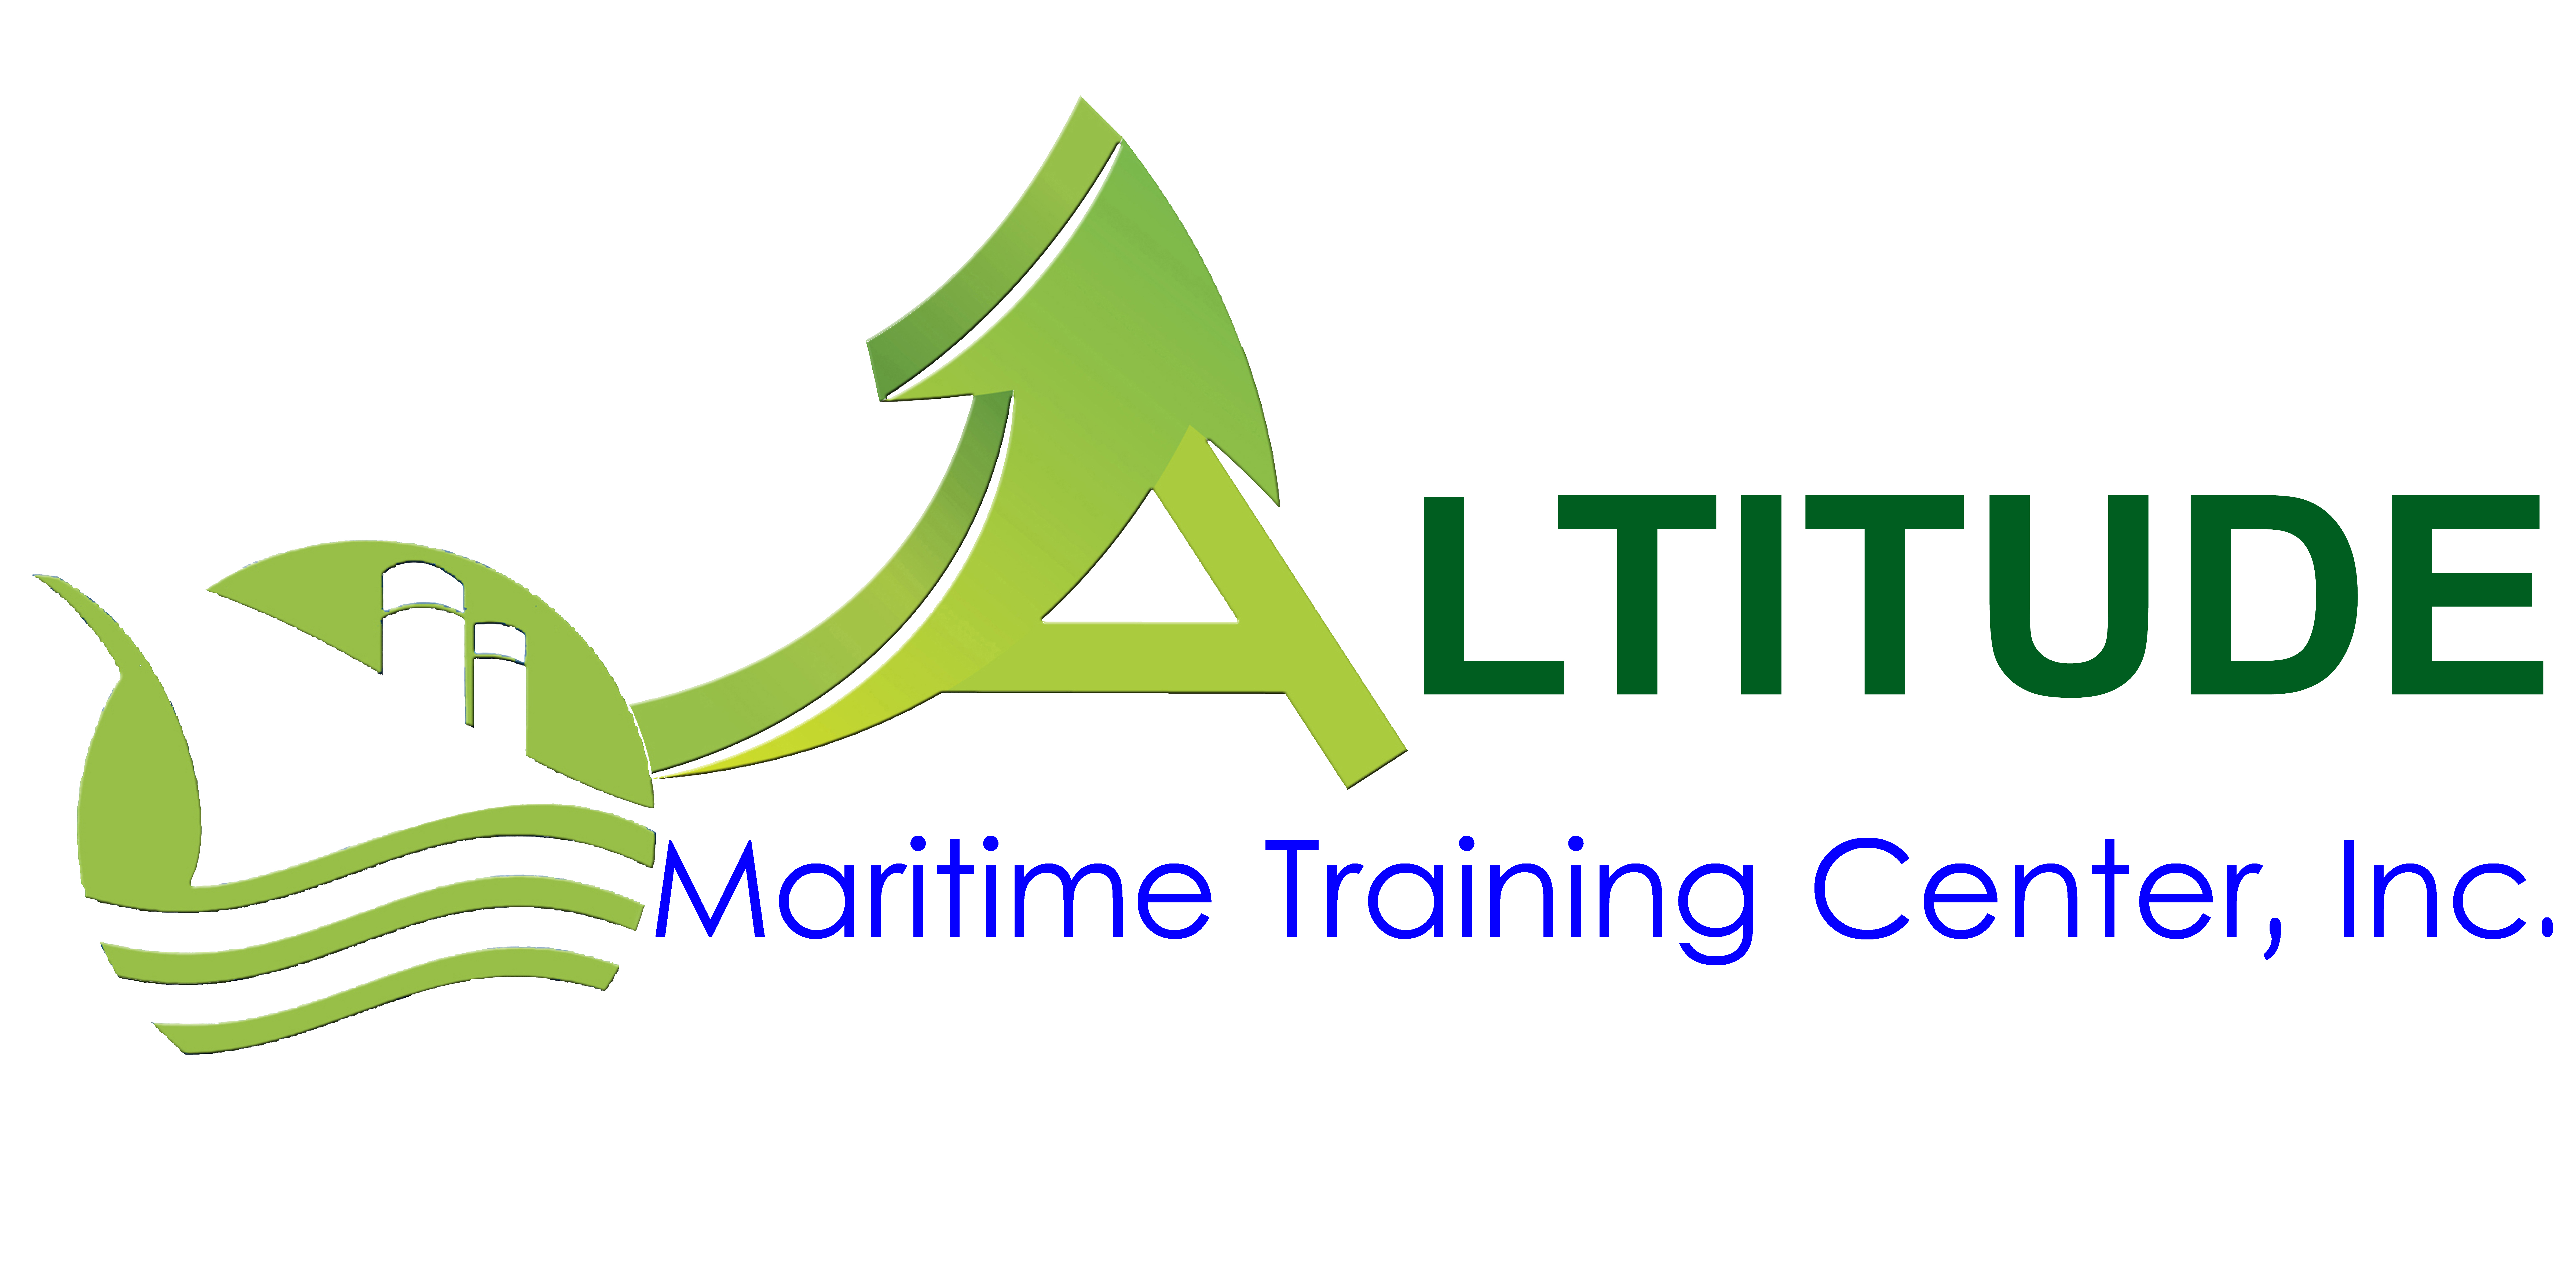 Altitude Maritime Training Center, Inc.